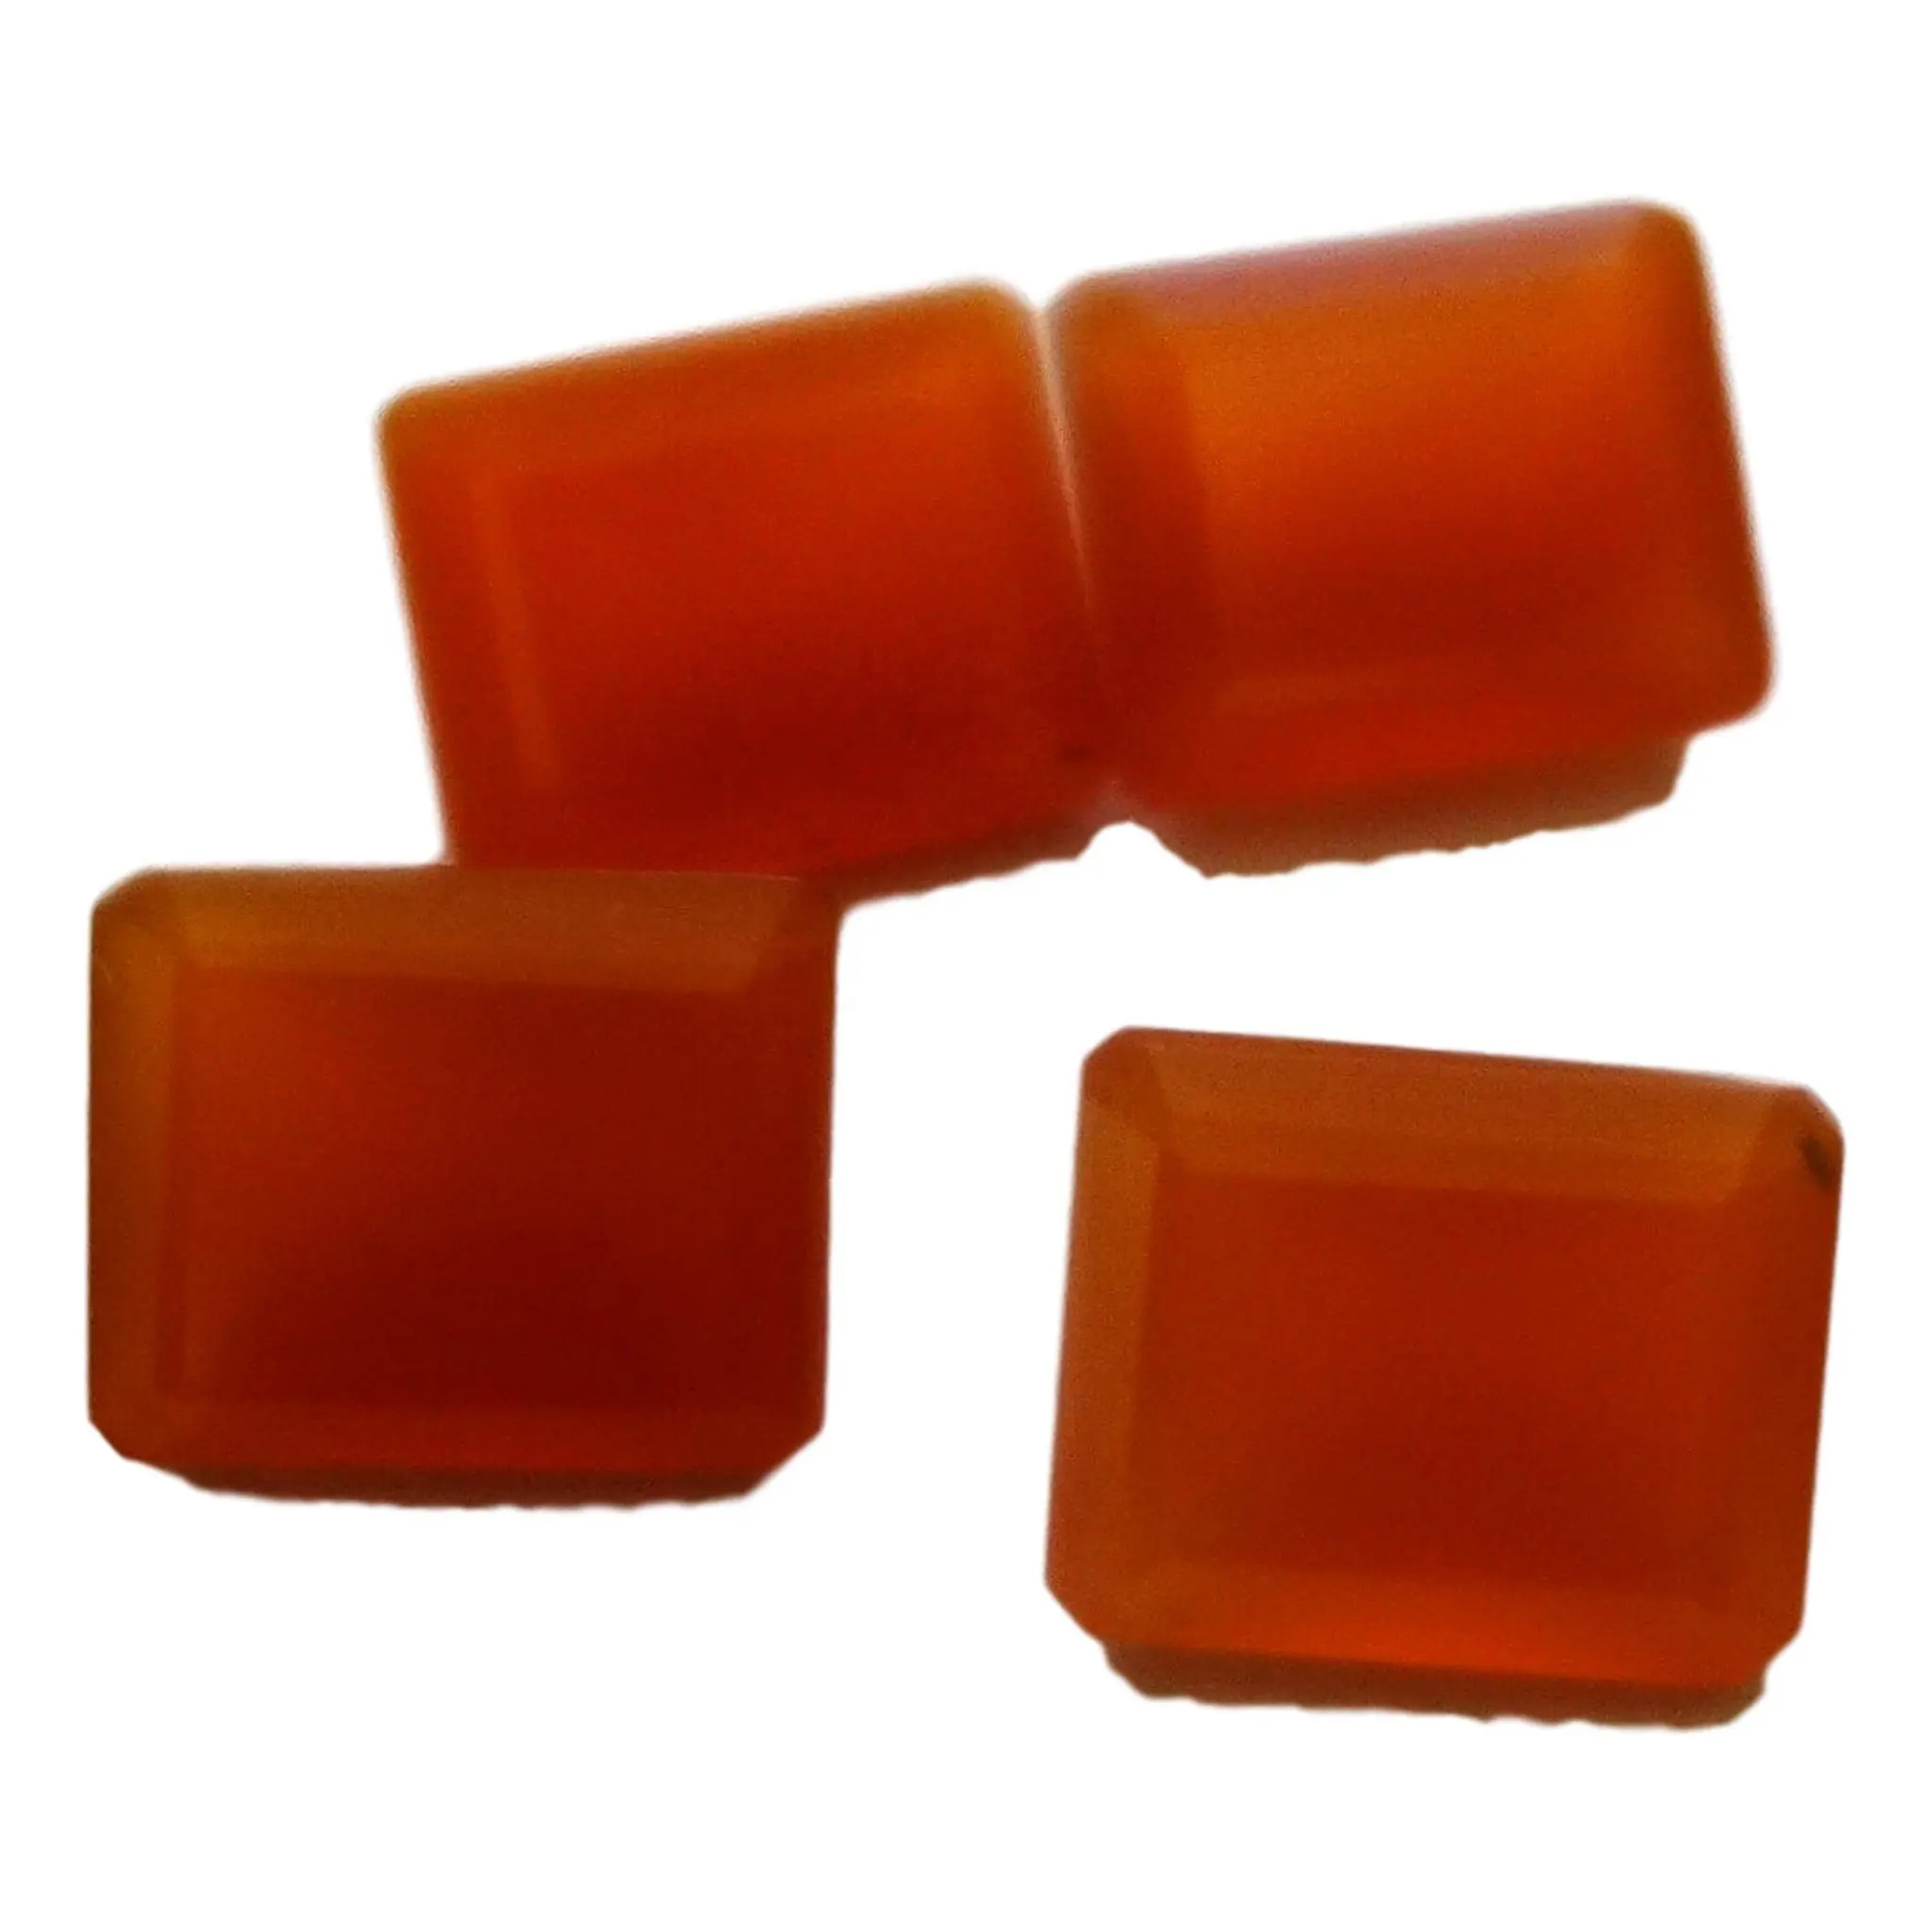 Ngọc lục bảo Chalcedony màu cam cắt tất cả các hình dạng và kích cỡ cắt theo đơn đặt hàng tùy chỉnh với giá bán buôn trong tất cả các loại Natura khác